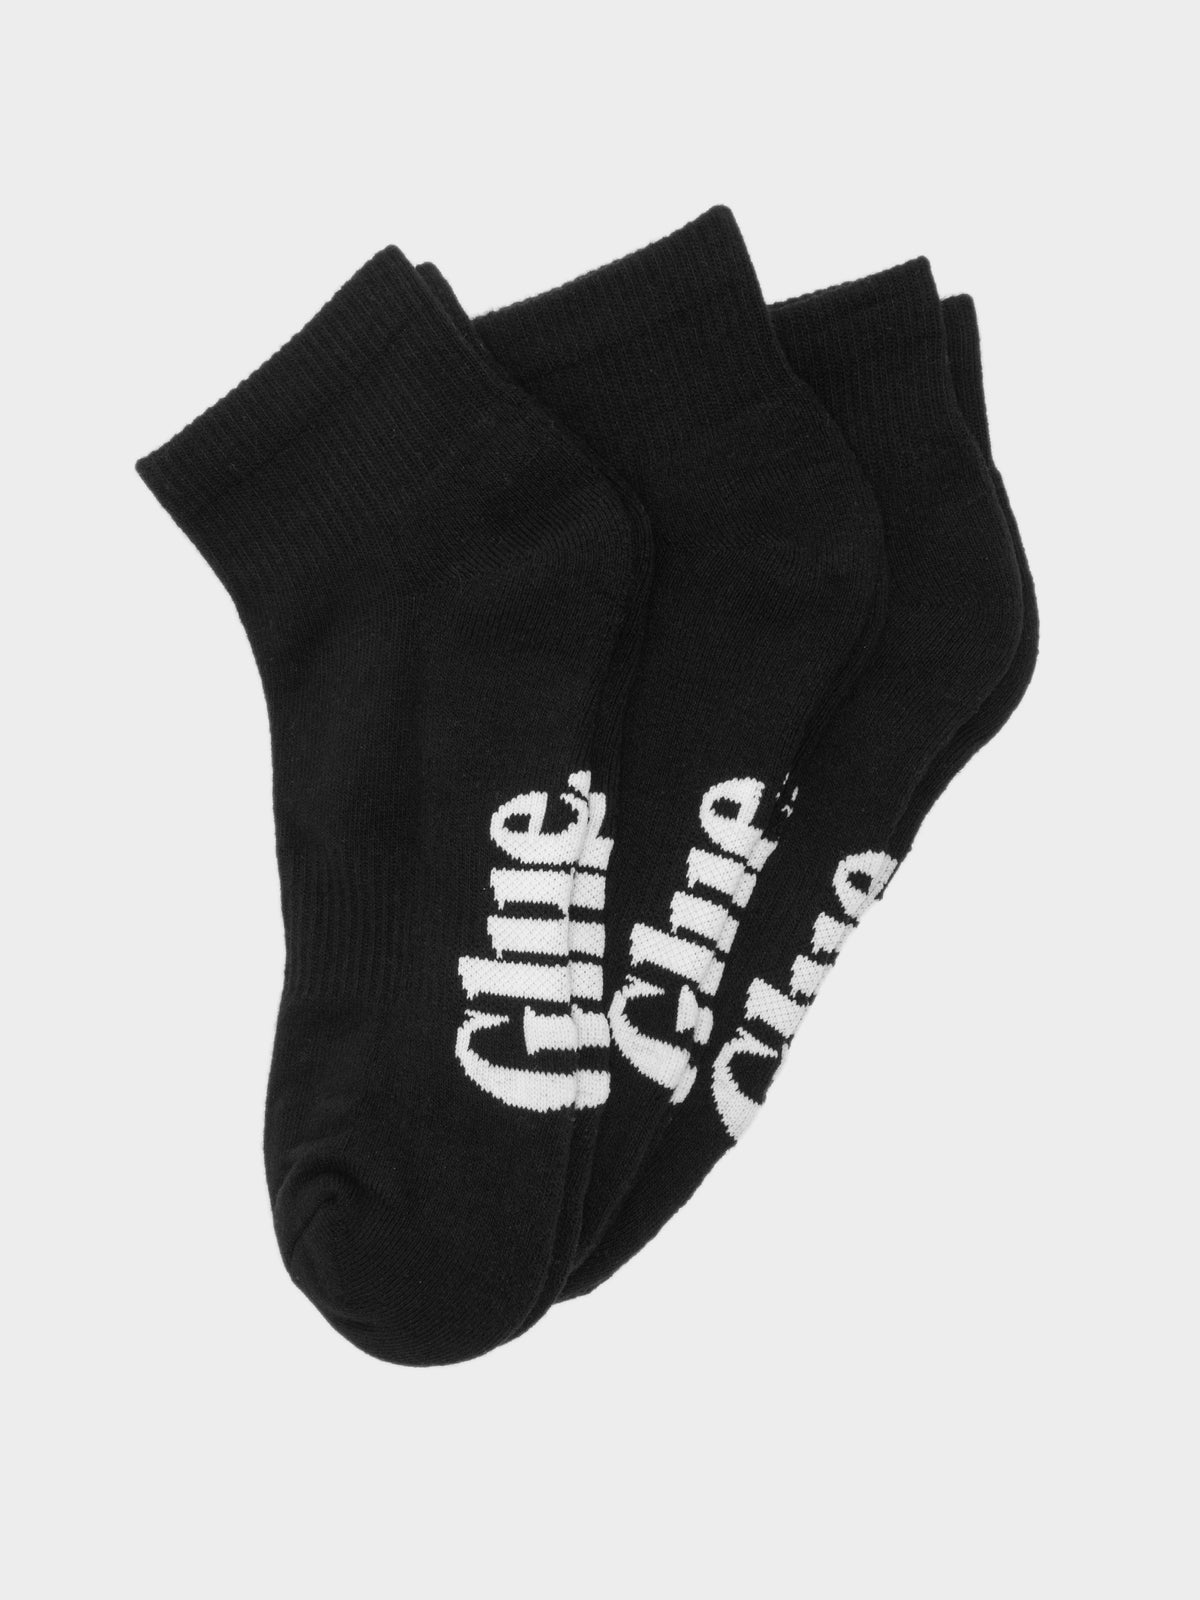 3 Pairs of Ankle Socks in Black